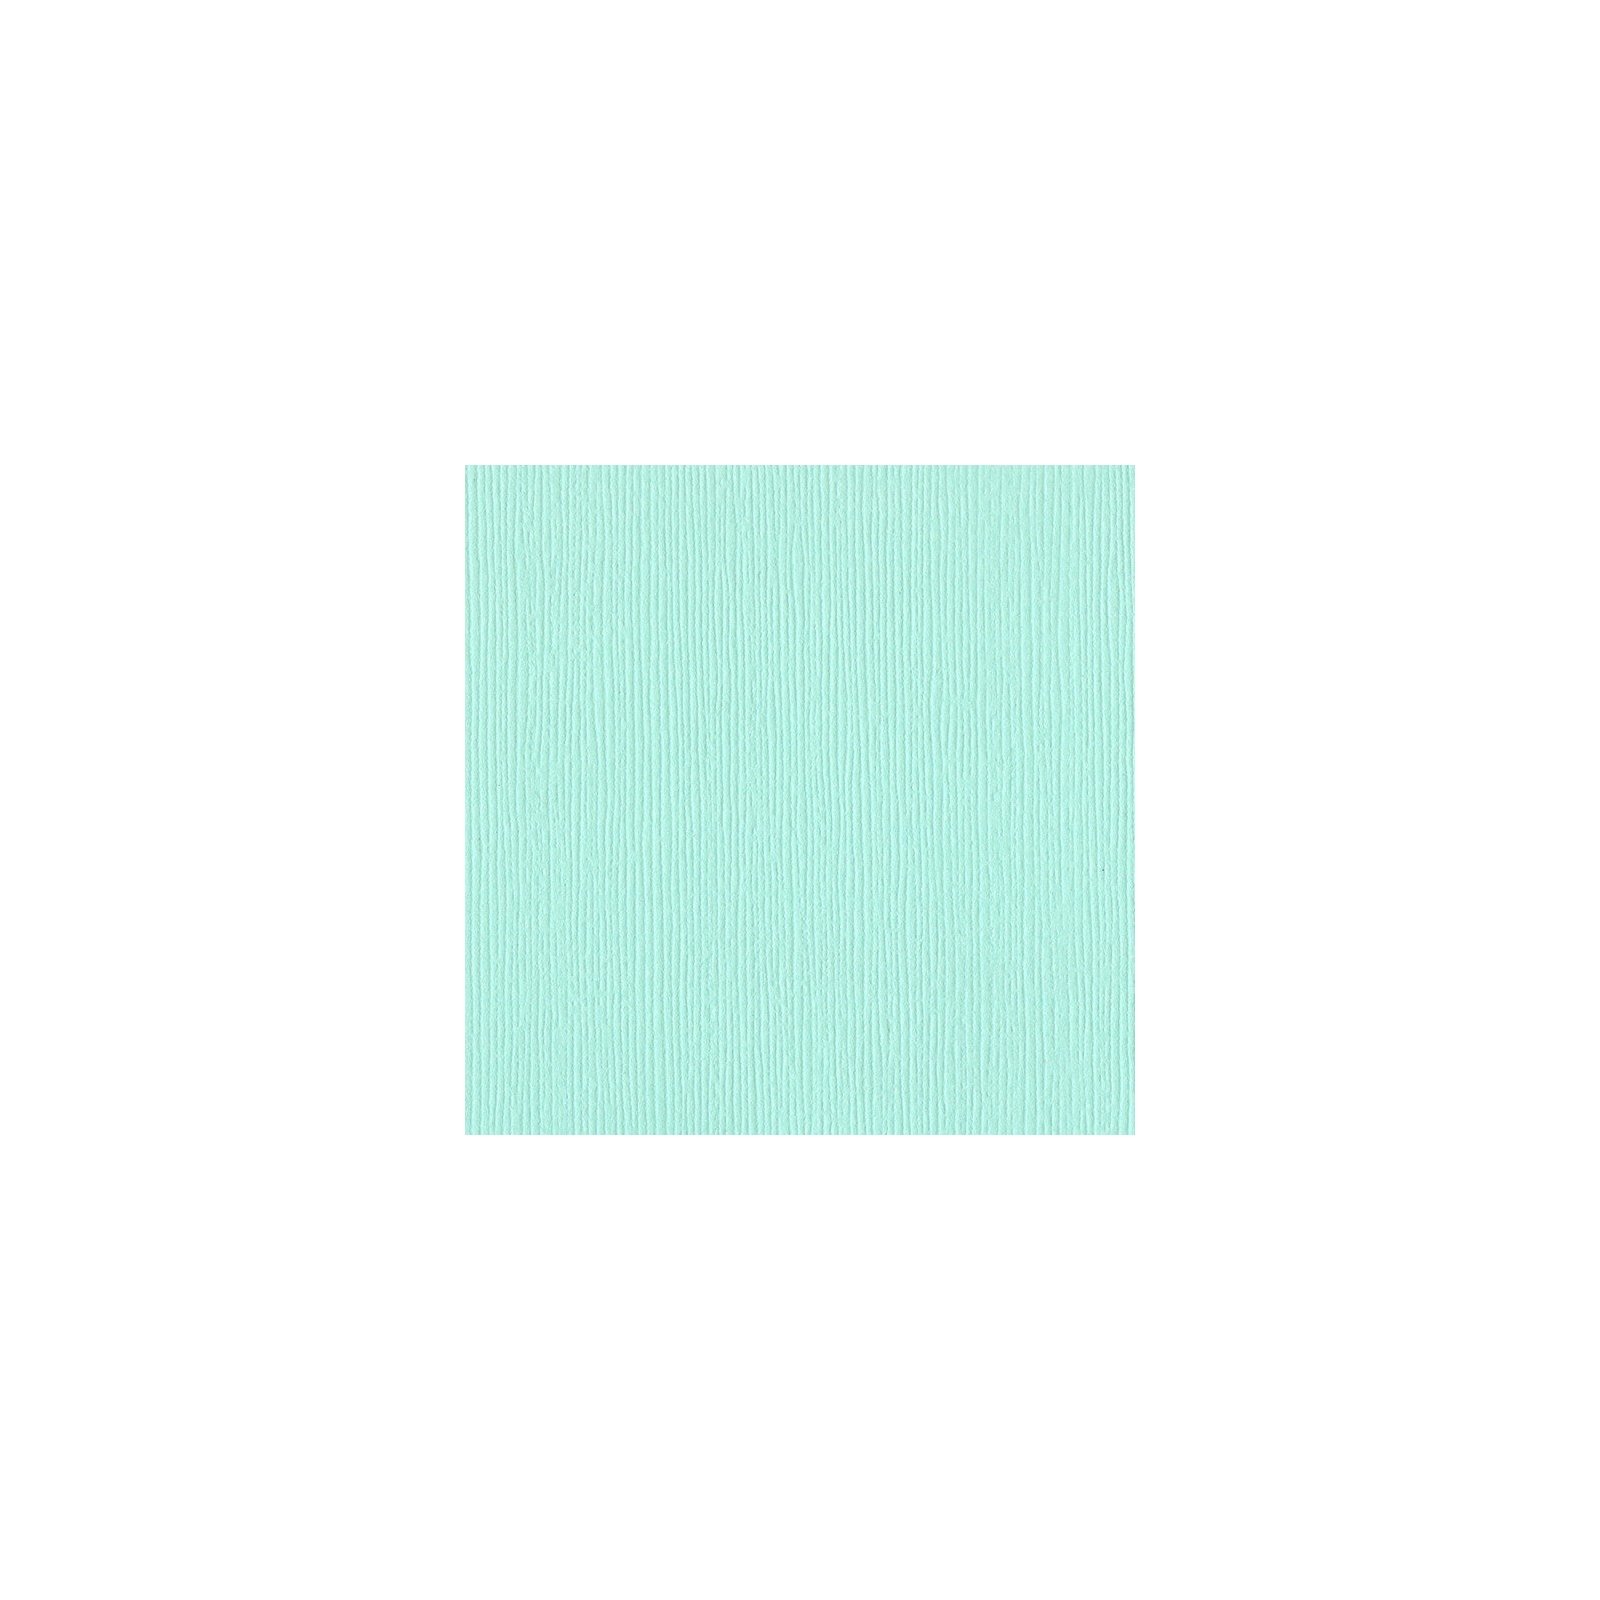 Papier vert d'eau - Turquoise mist - Fourz - Bazzill Basics Paper